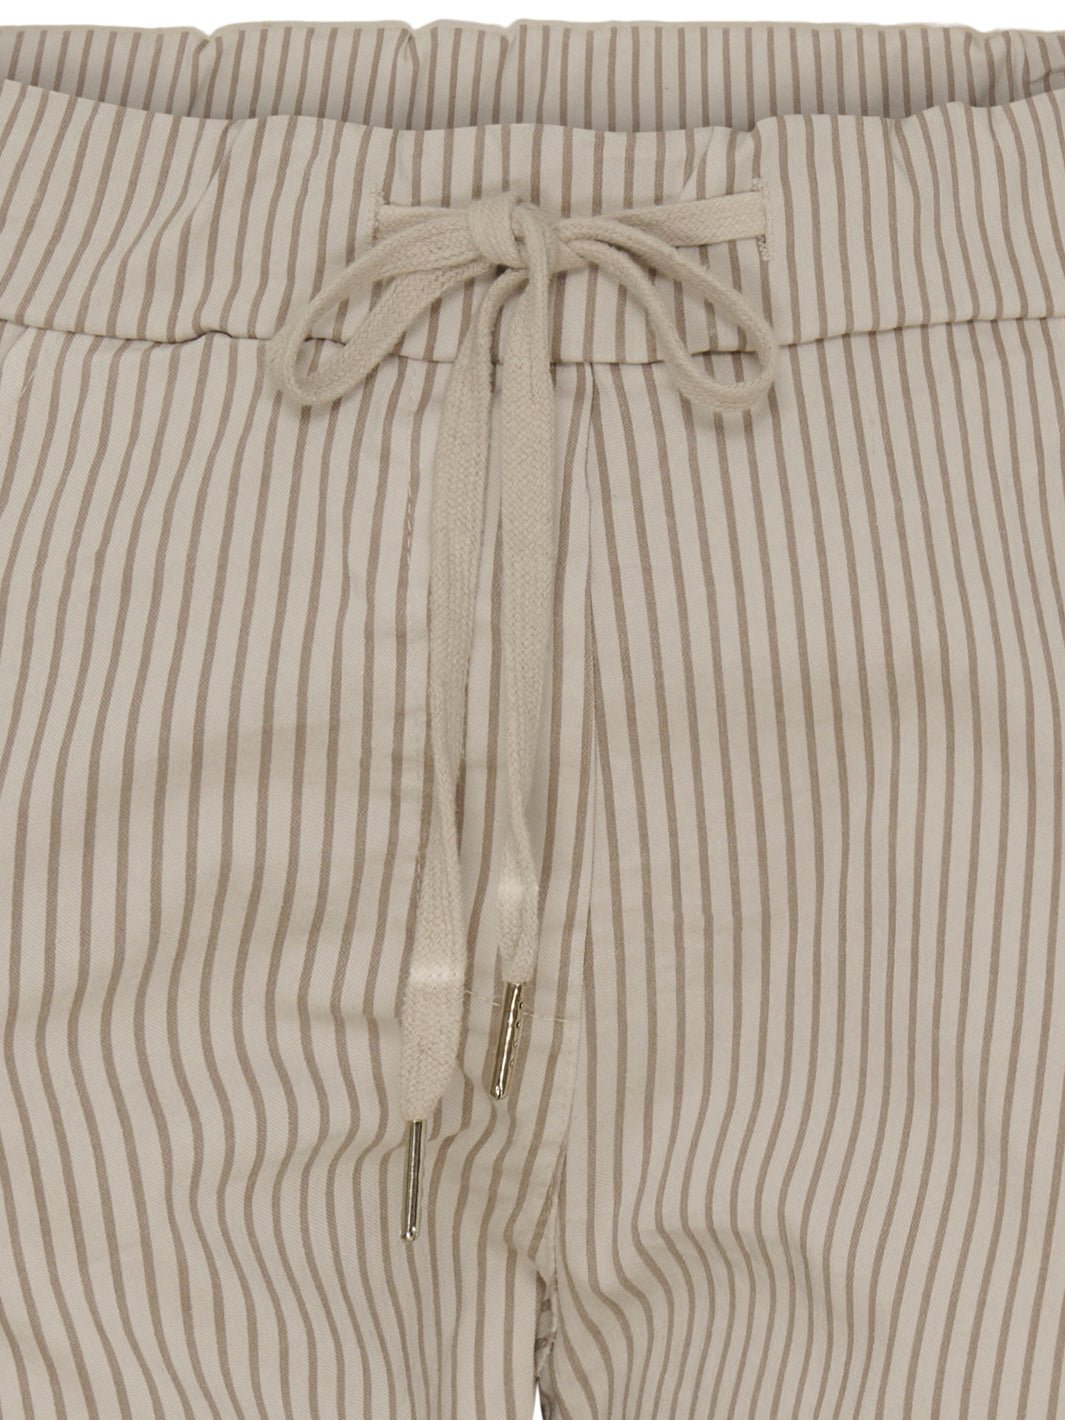 Marta du Chateau Jerri pants beige/brown stripe - Online-Mode